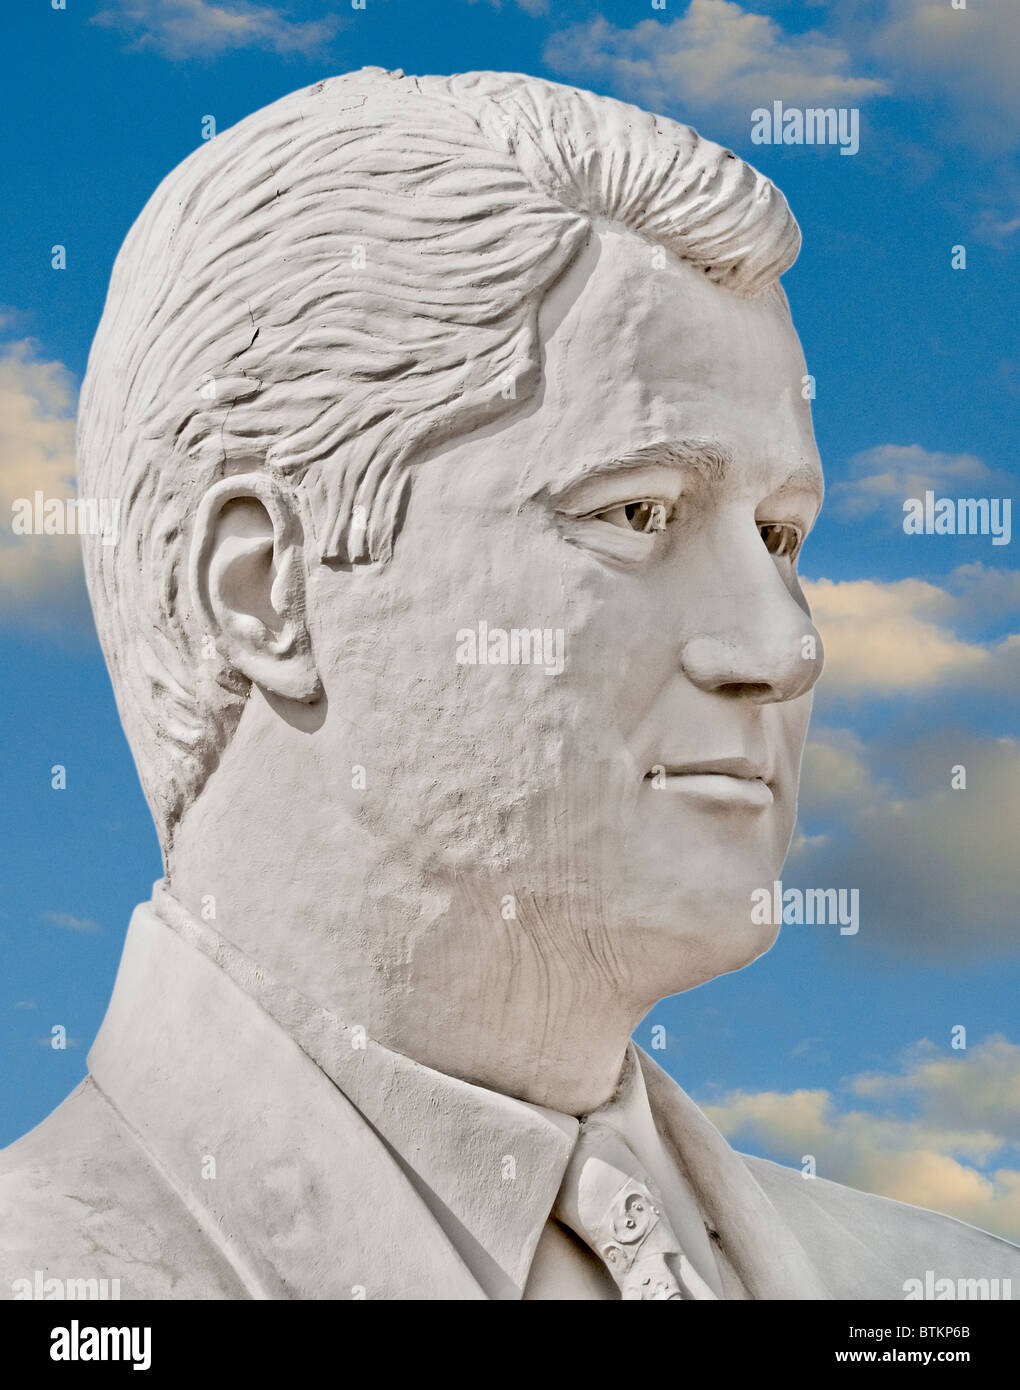 Sculpture en béton blanc de Bill Clinton, 41e président des États-Unis, à David Adickes Sculpturworx Studio à Houston, Texas, USA Banque D'Images